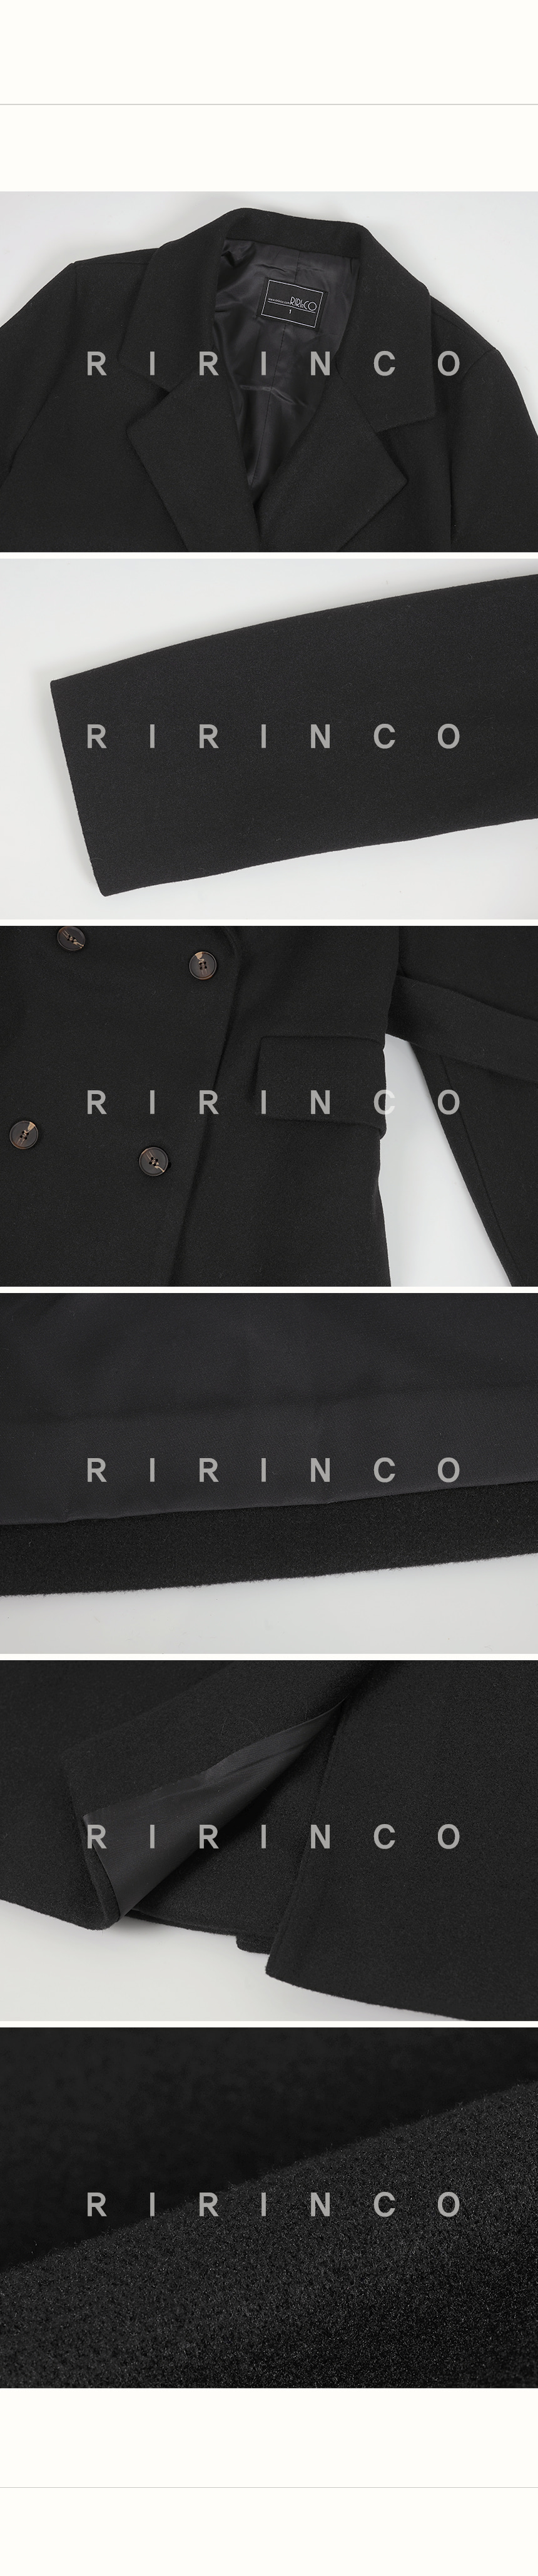 RIRINCO ストラップ付き テーラード ロングコート